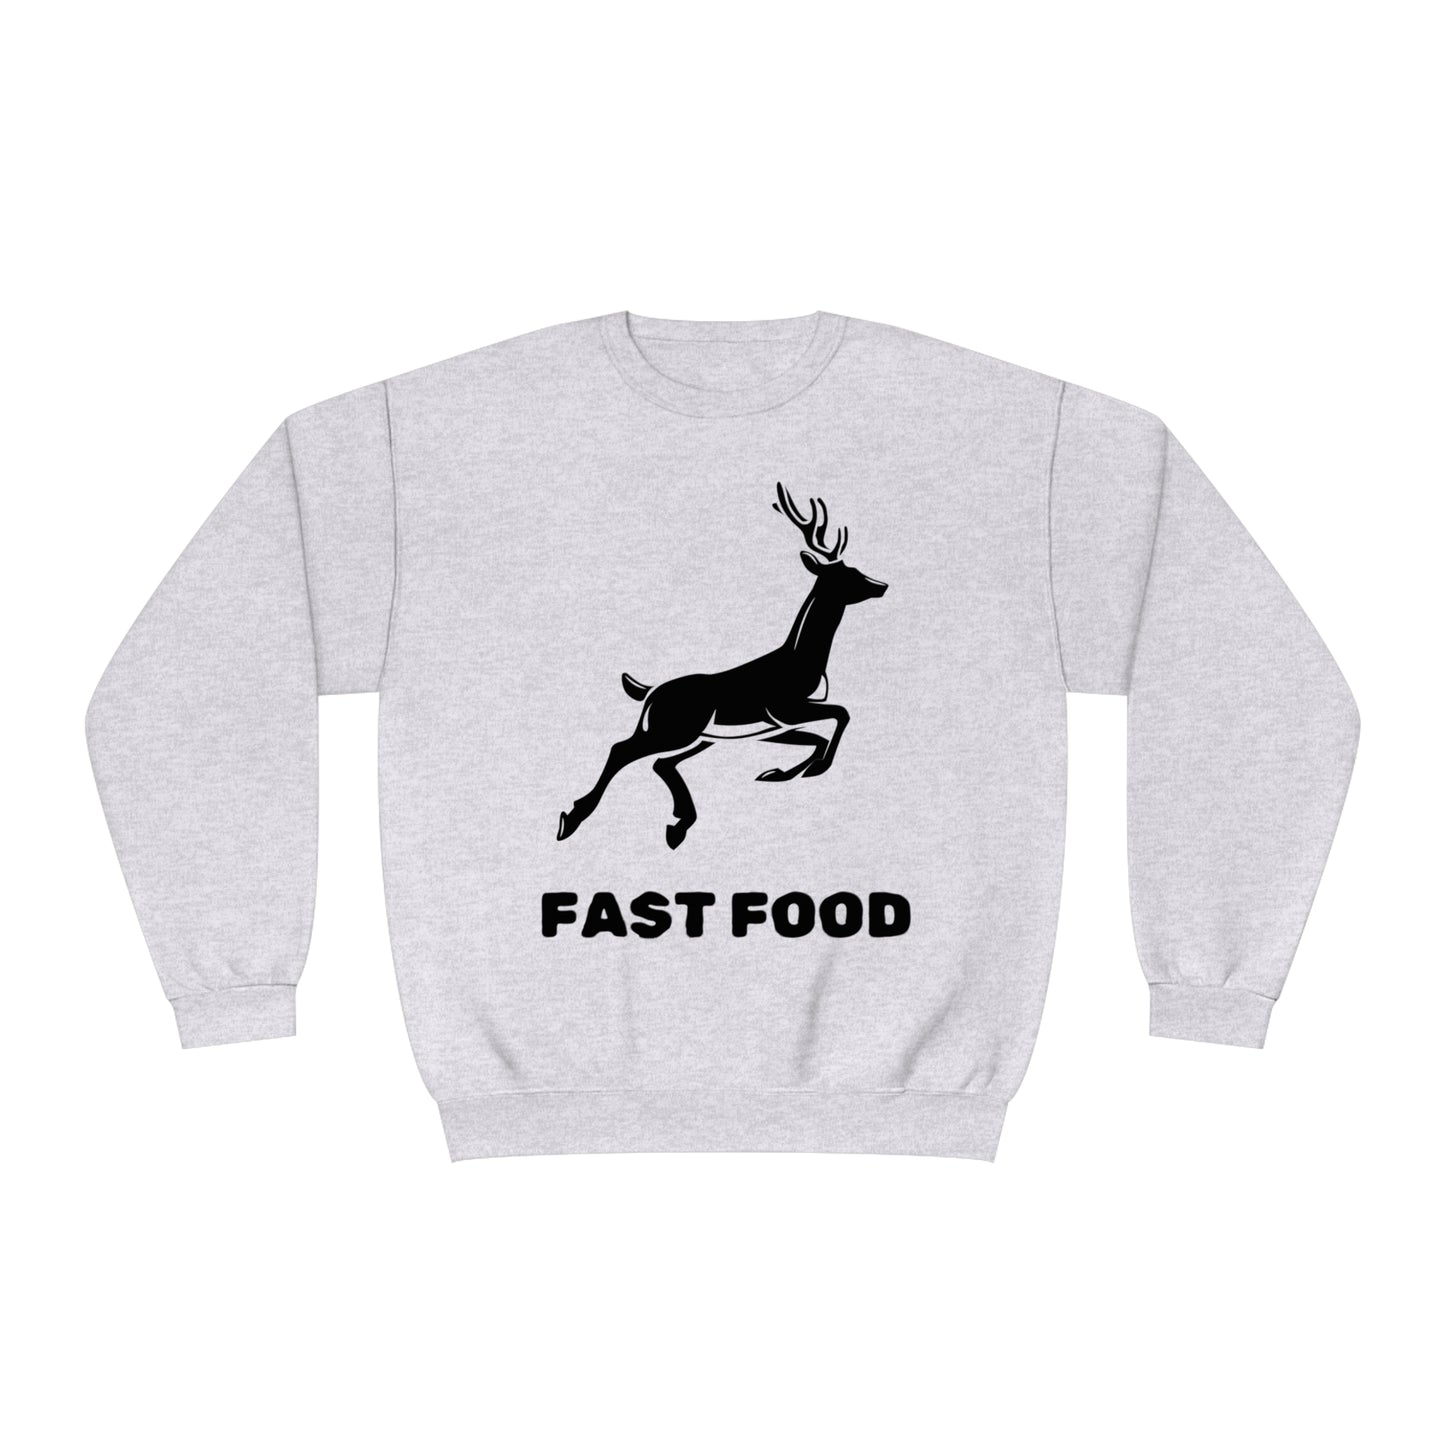 Fast Food - Unisex NuBlend® Crewneck Hunting Sweatshirt